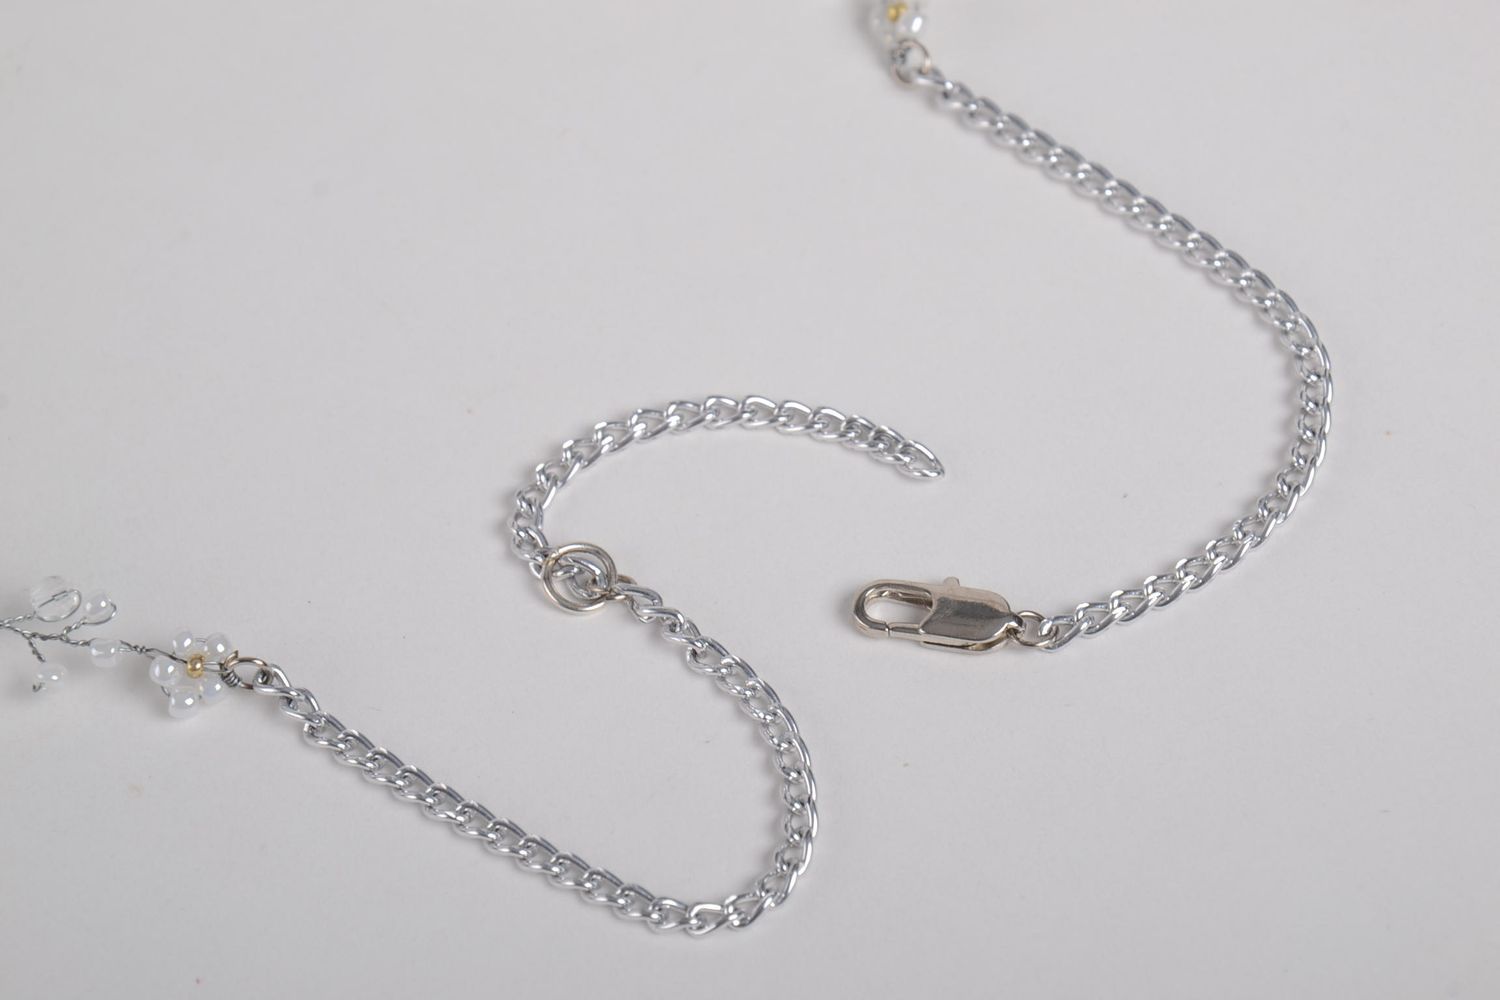 Handmade beaded accessory stylish wedding jewelry elegant necklace gift photo 4